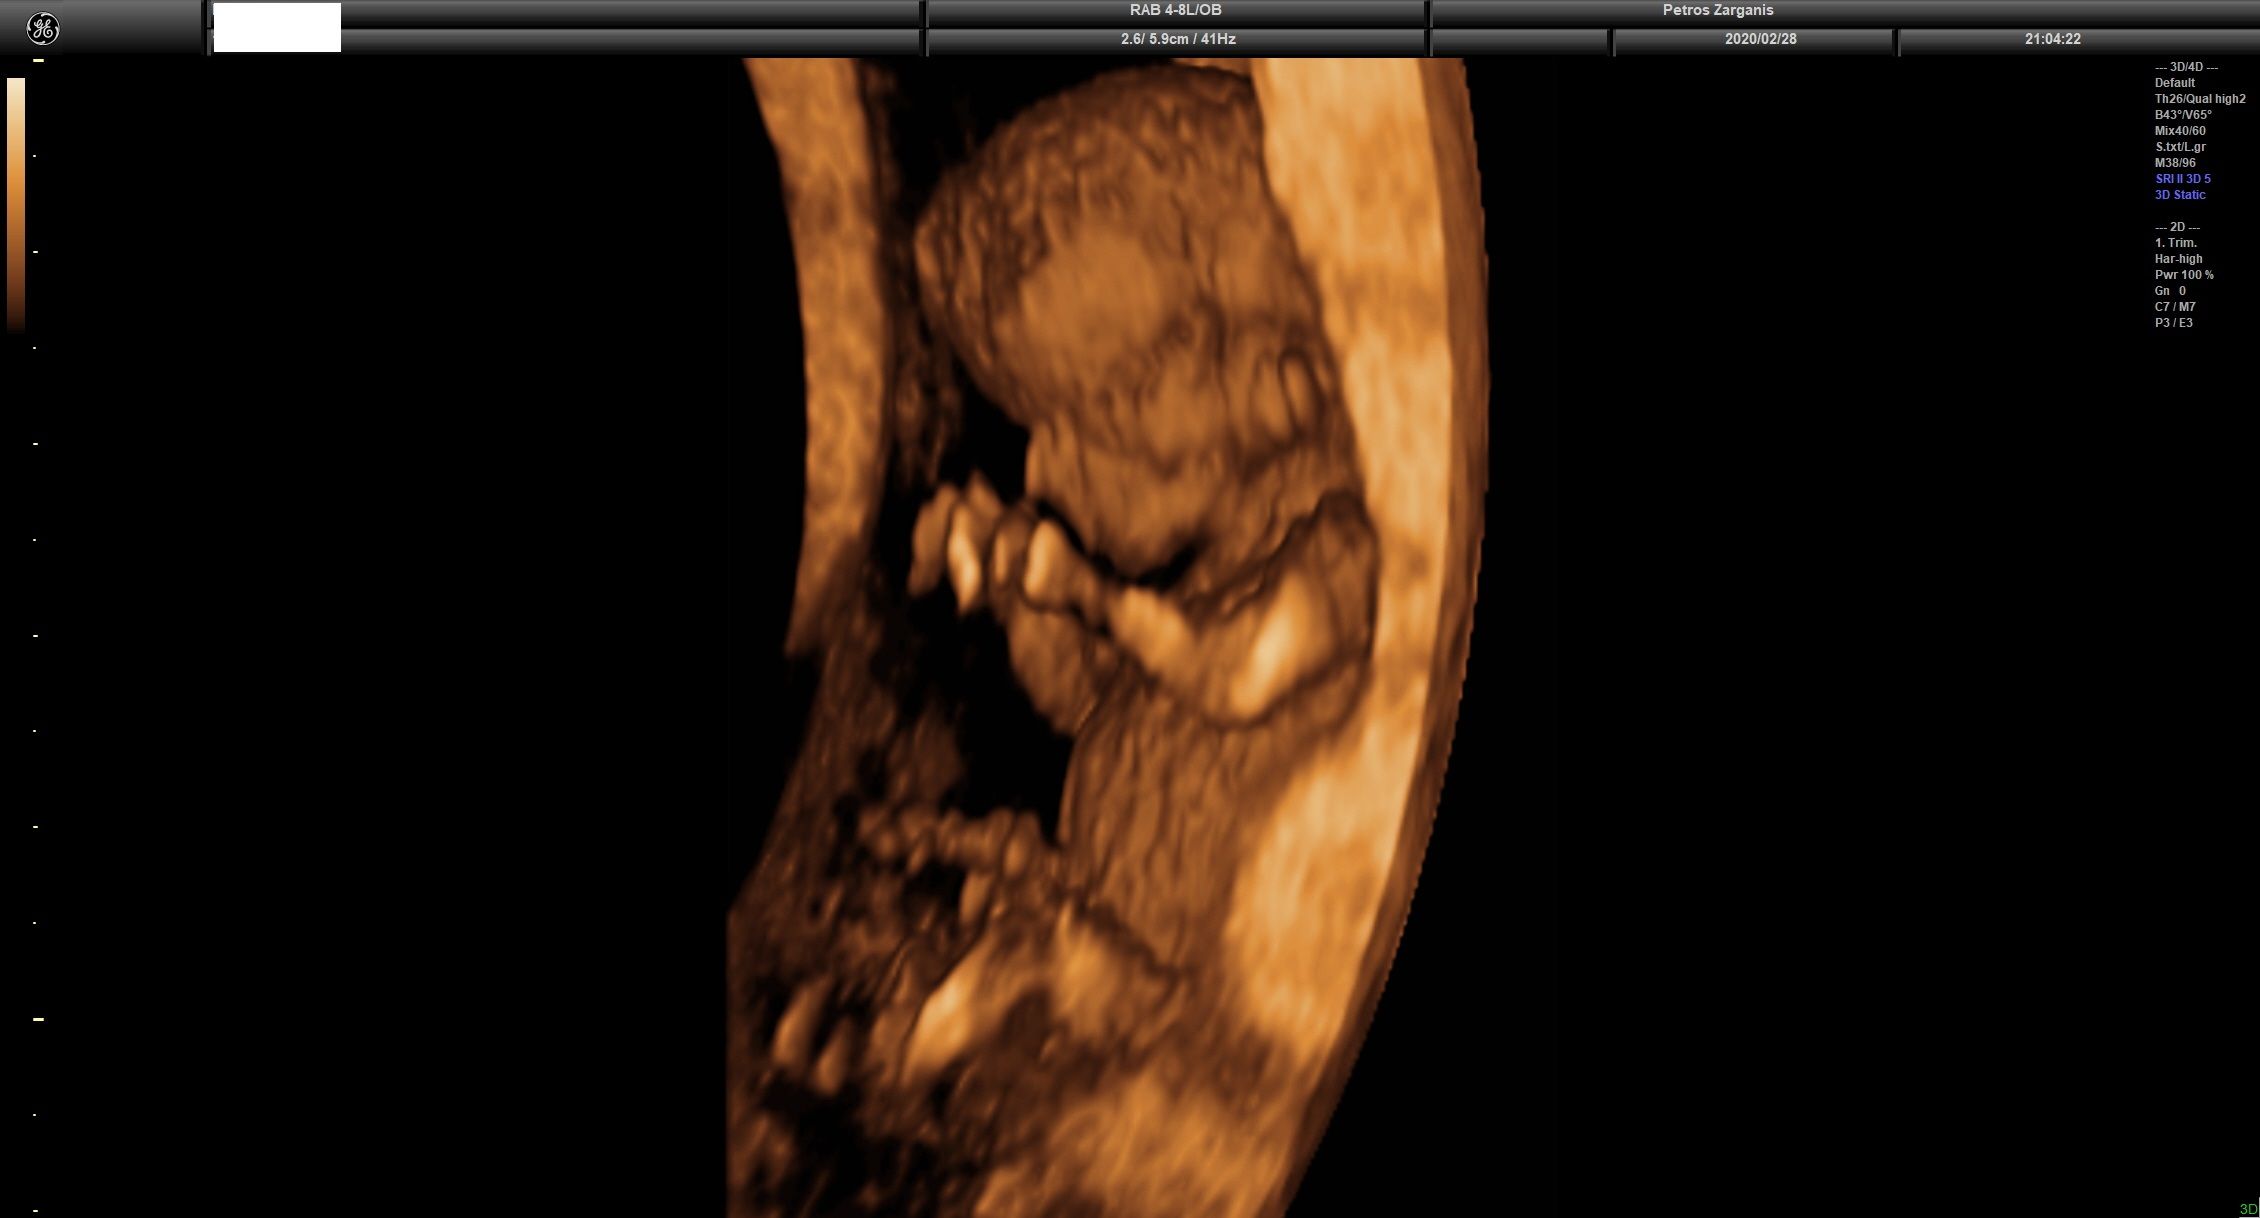 Εμβρυο 11 εβδομάδων +2 ημερών τρισδιάστατη απεικόνιση , σε εγκυμοσύνη με κολπική αιμόρροια και ευχάριστη εξέλιξη [1]